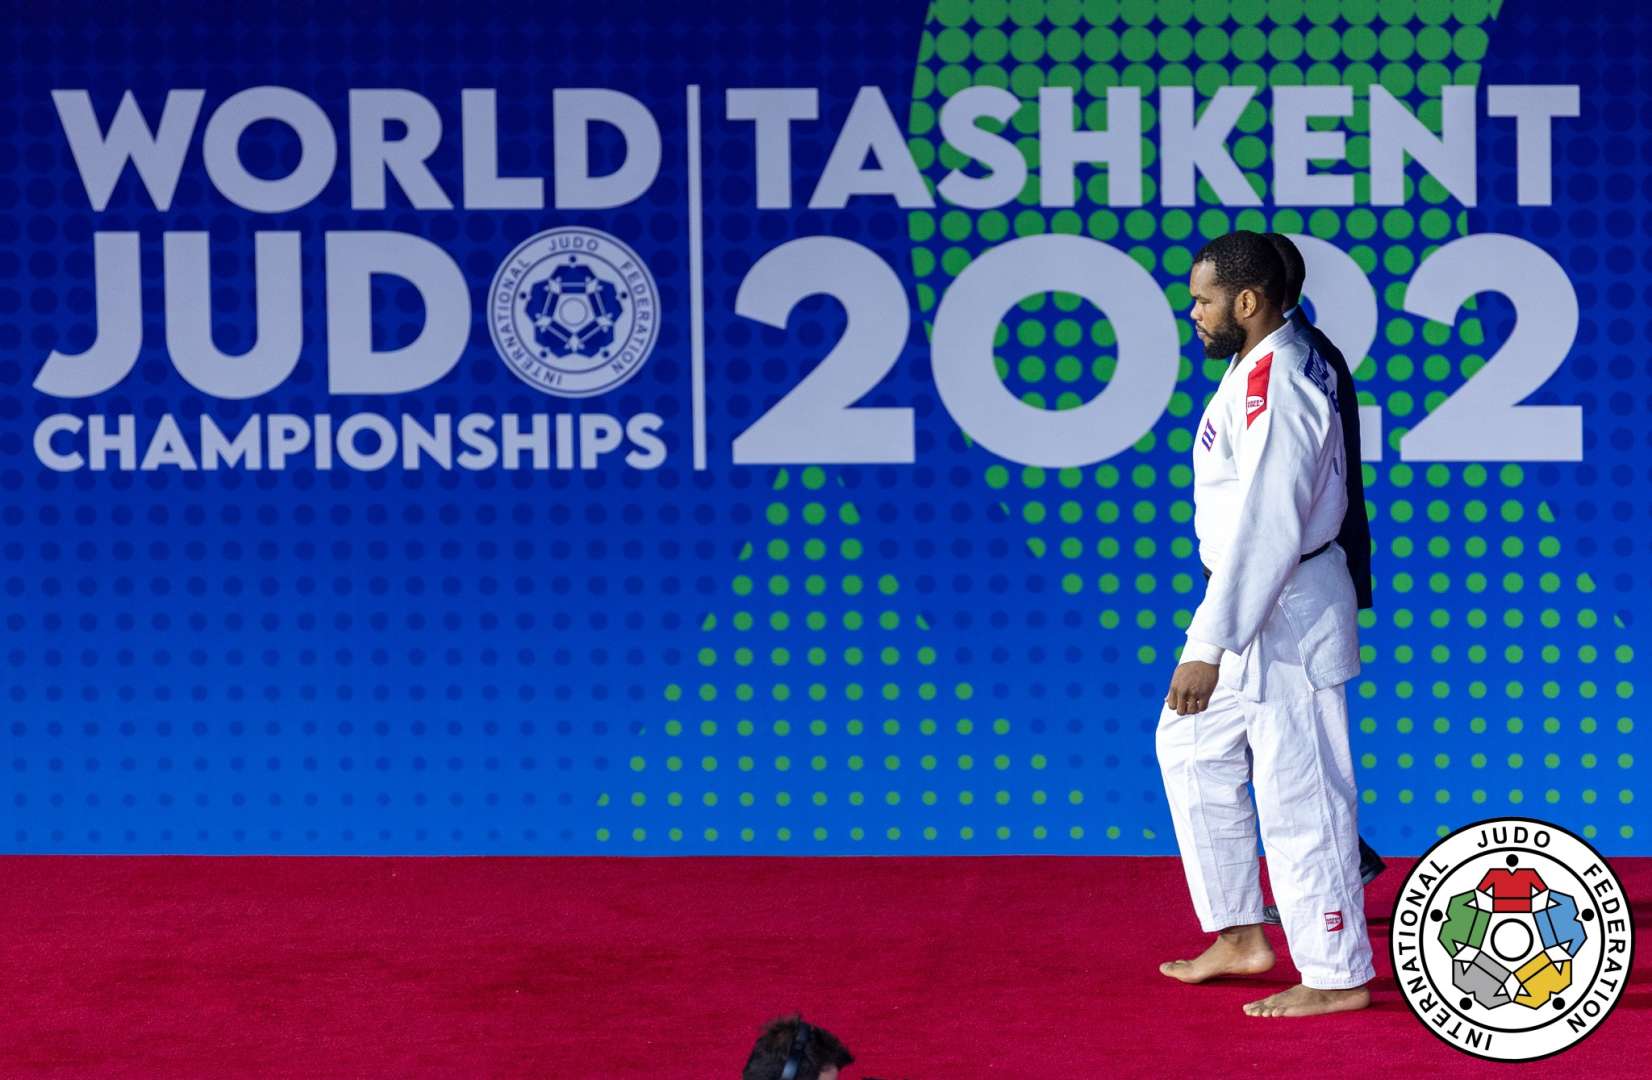 Judô - Boletim OSOTOGARI. Aqui tem notícias do judô: FIJ World Tour segue  para o Grand Slam de Tashkent - Uzbequistão